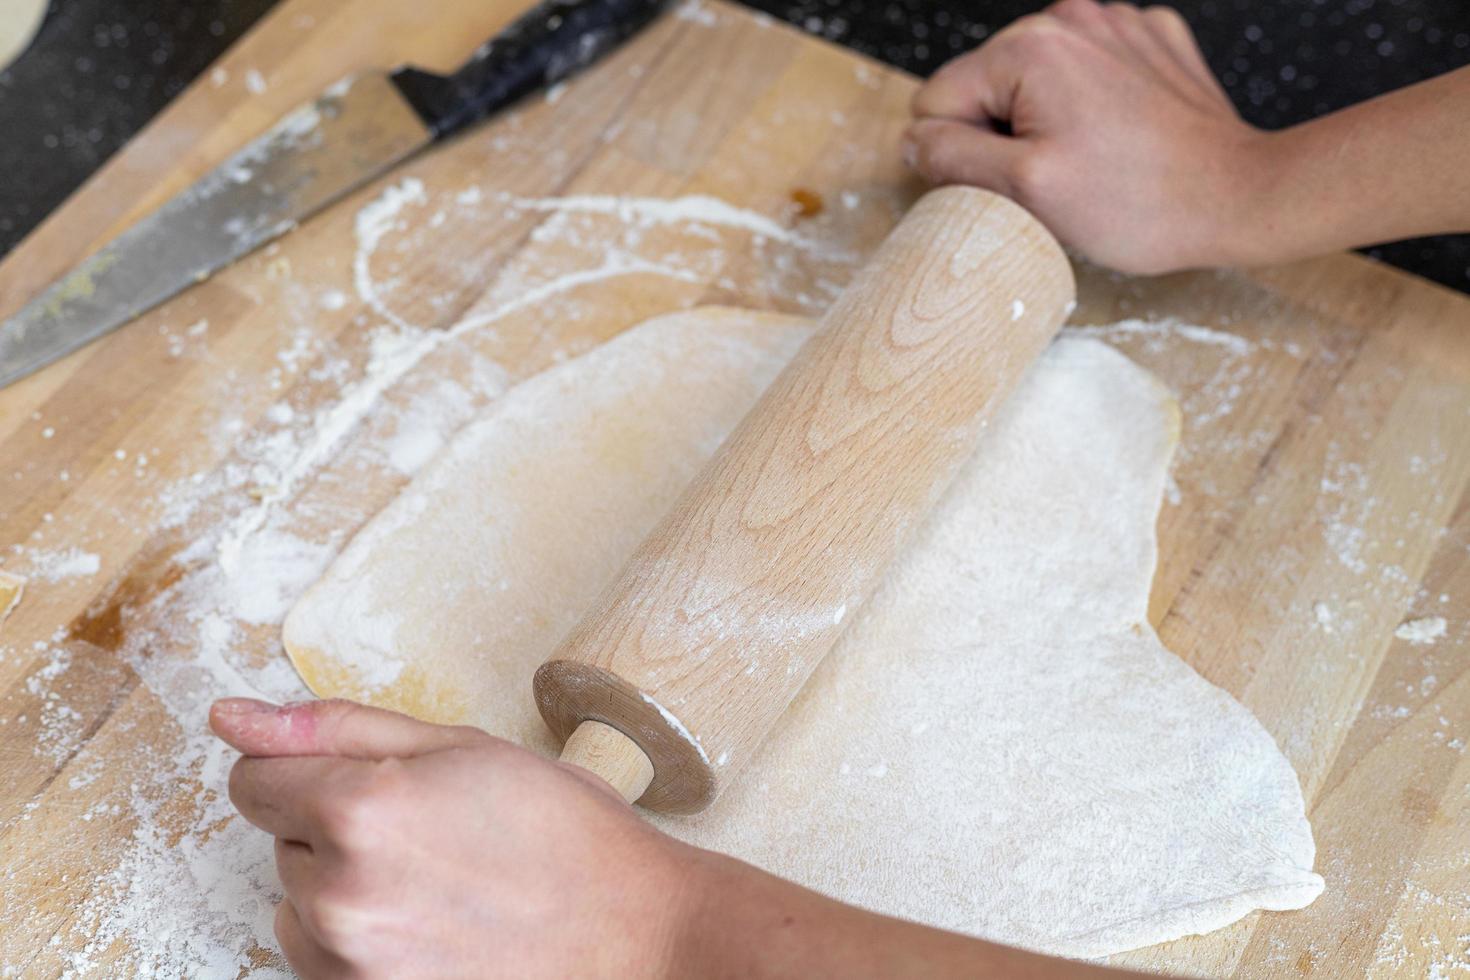 una persona enrollando la masa para hacer pasta de lasaña casera. foto